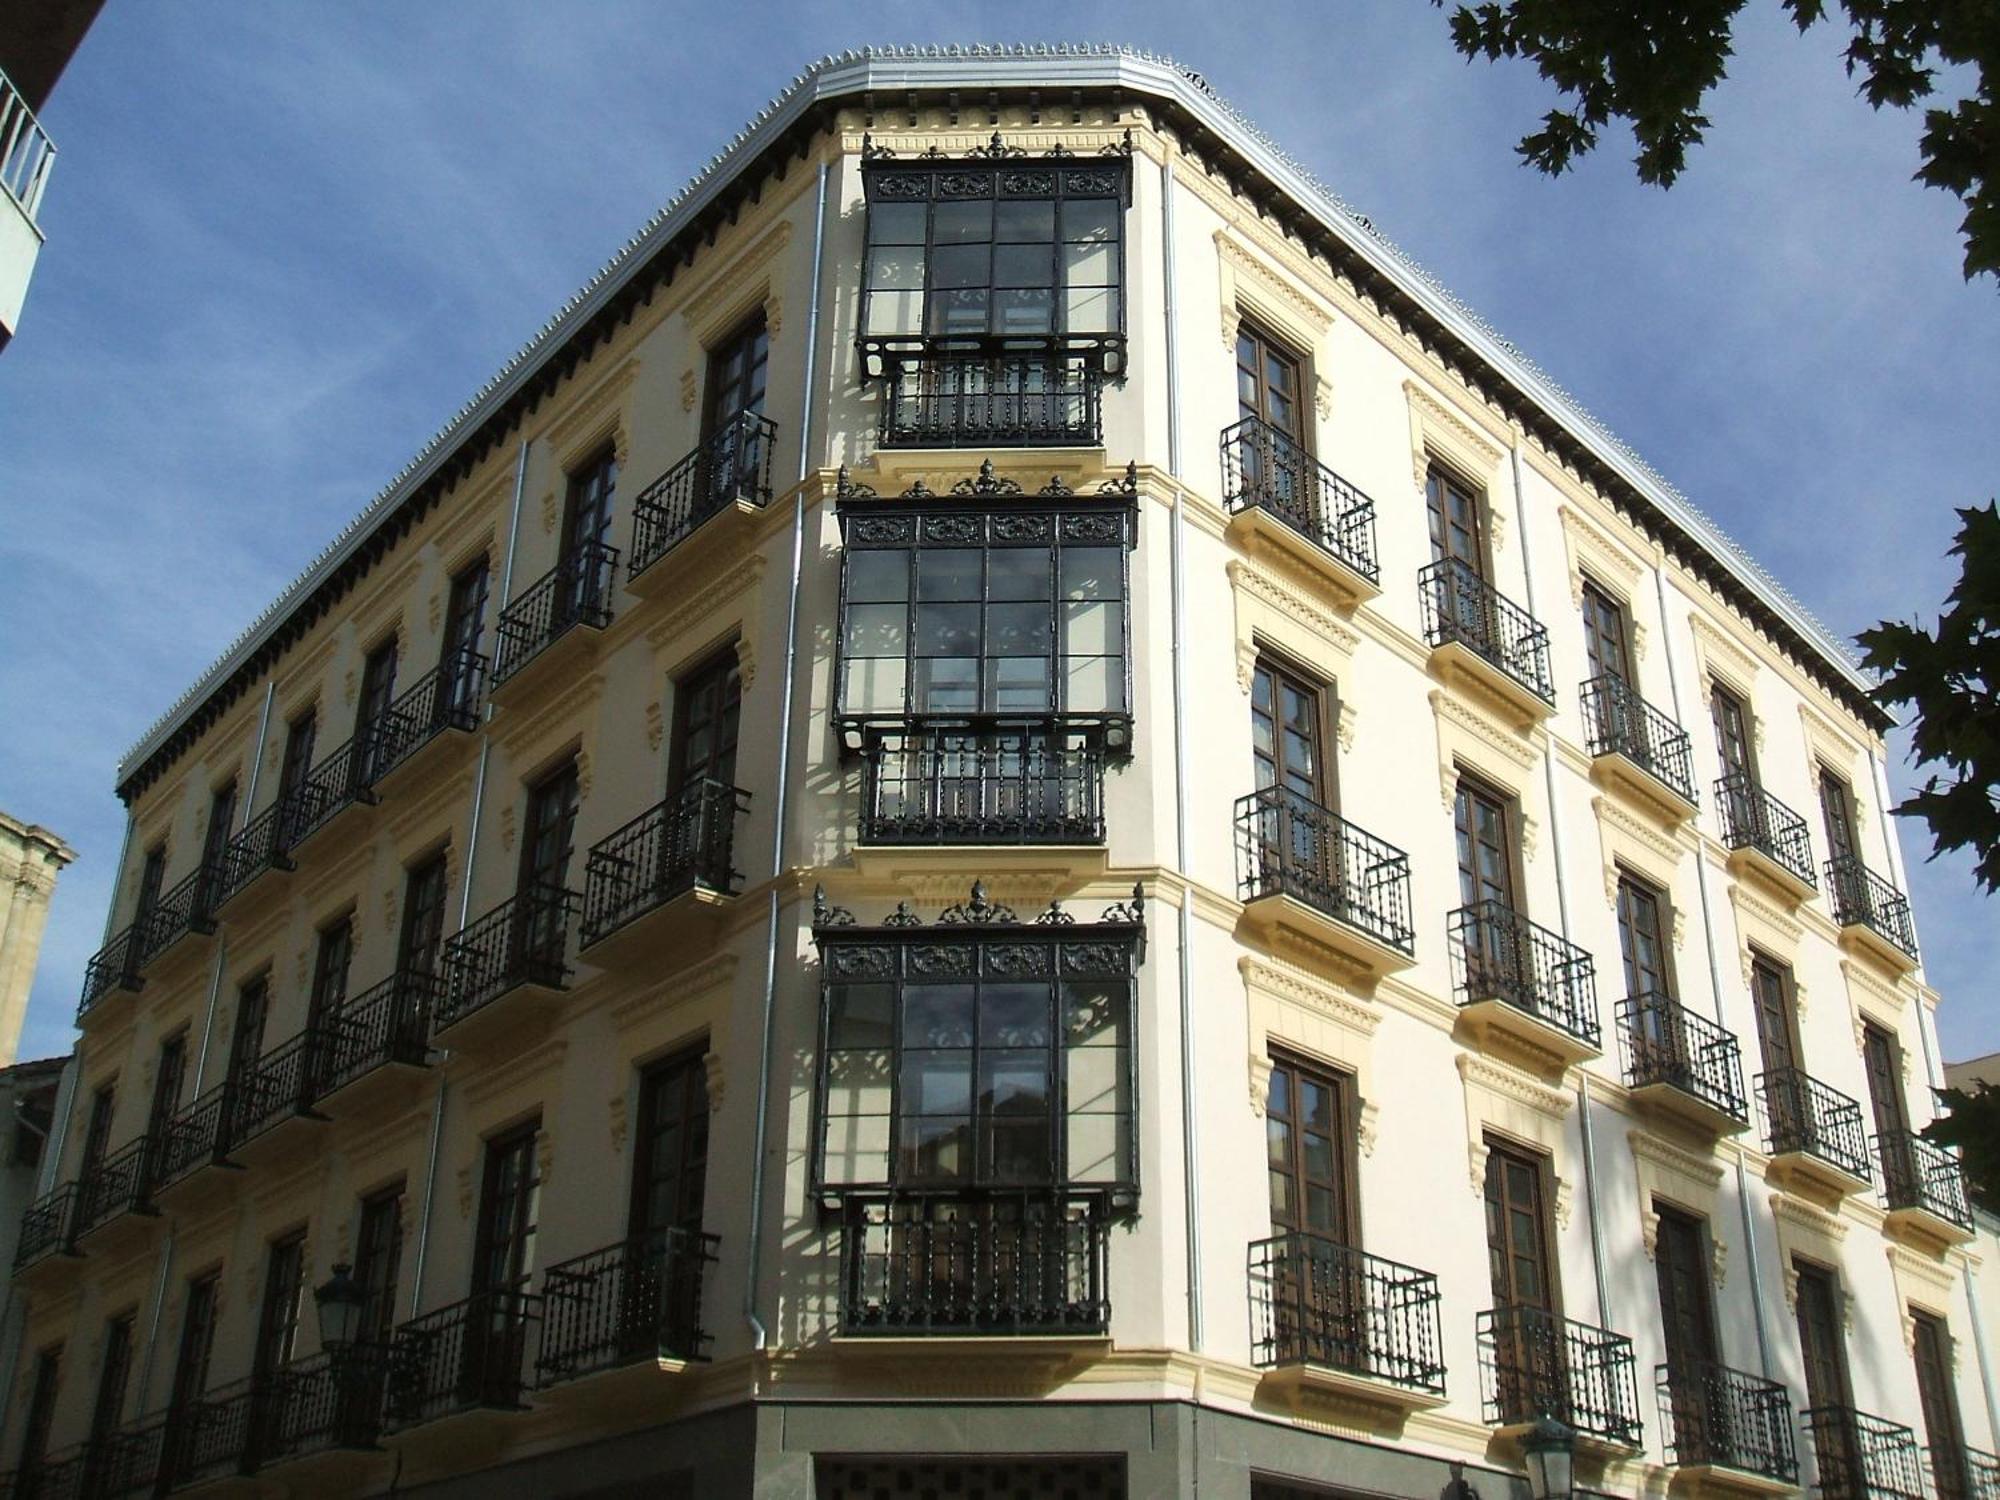 La Casa De La Trinidad Hotell Granada Exteriör bild